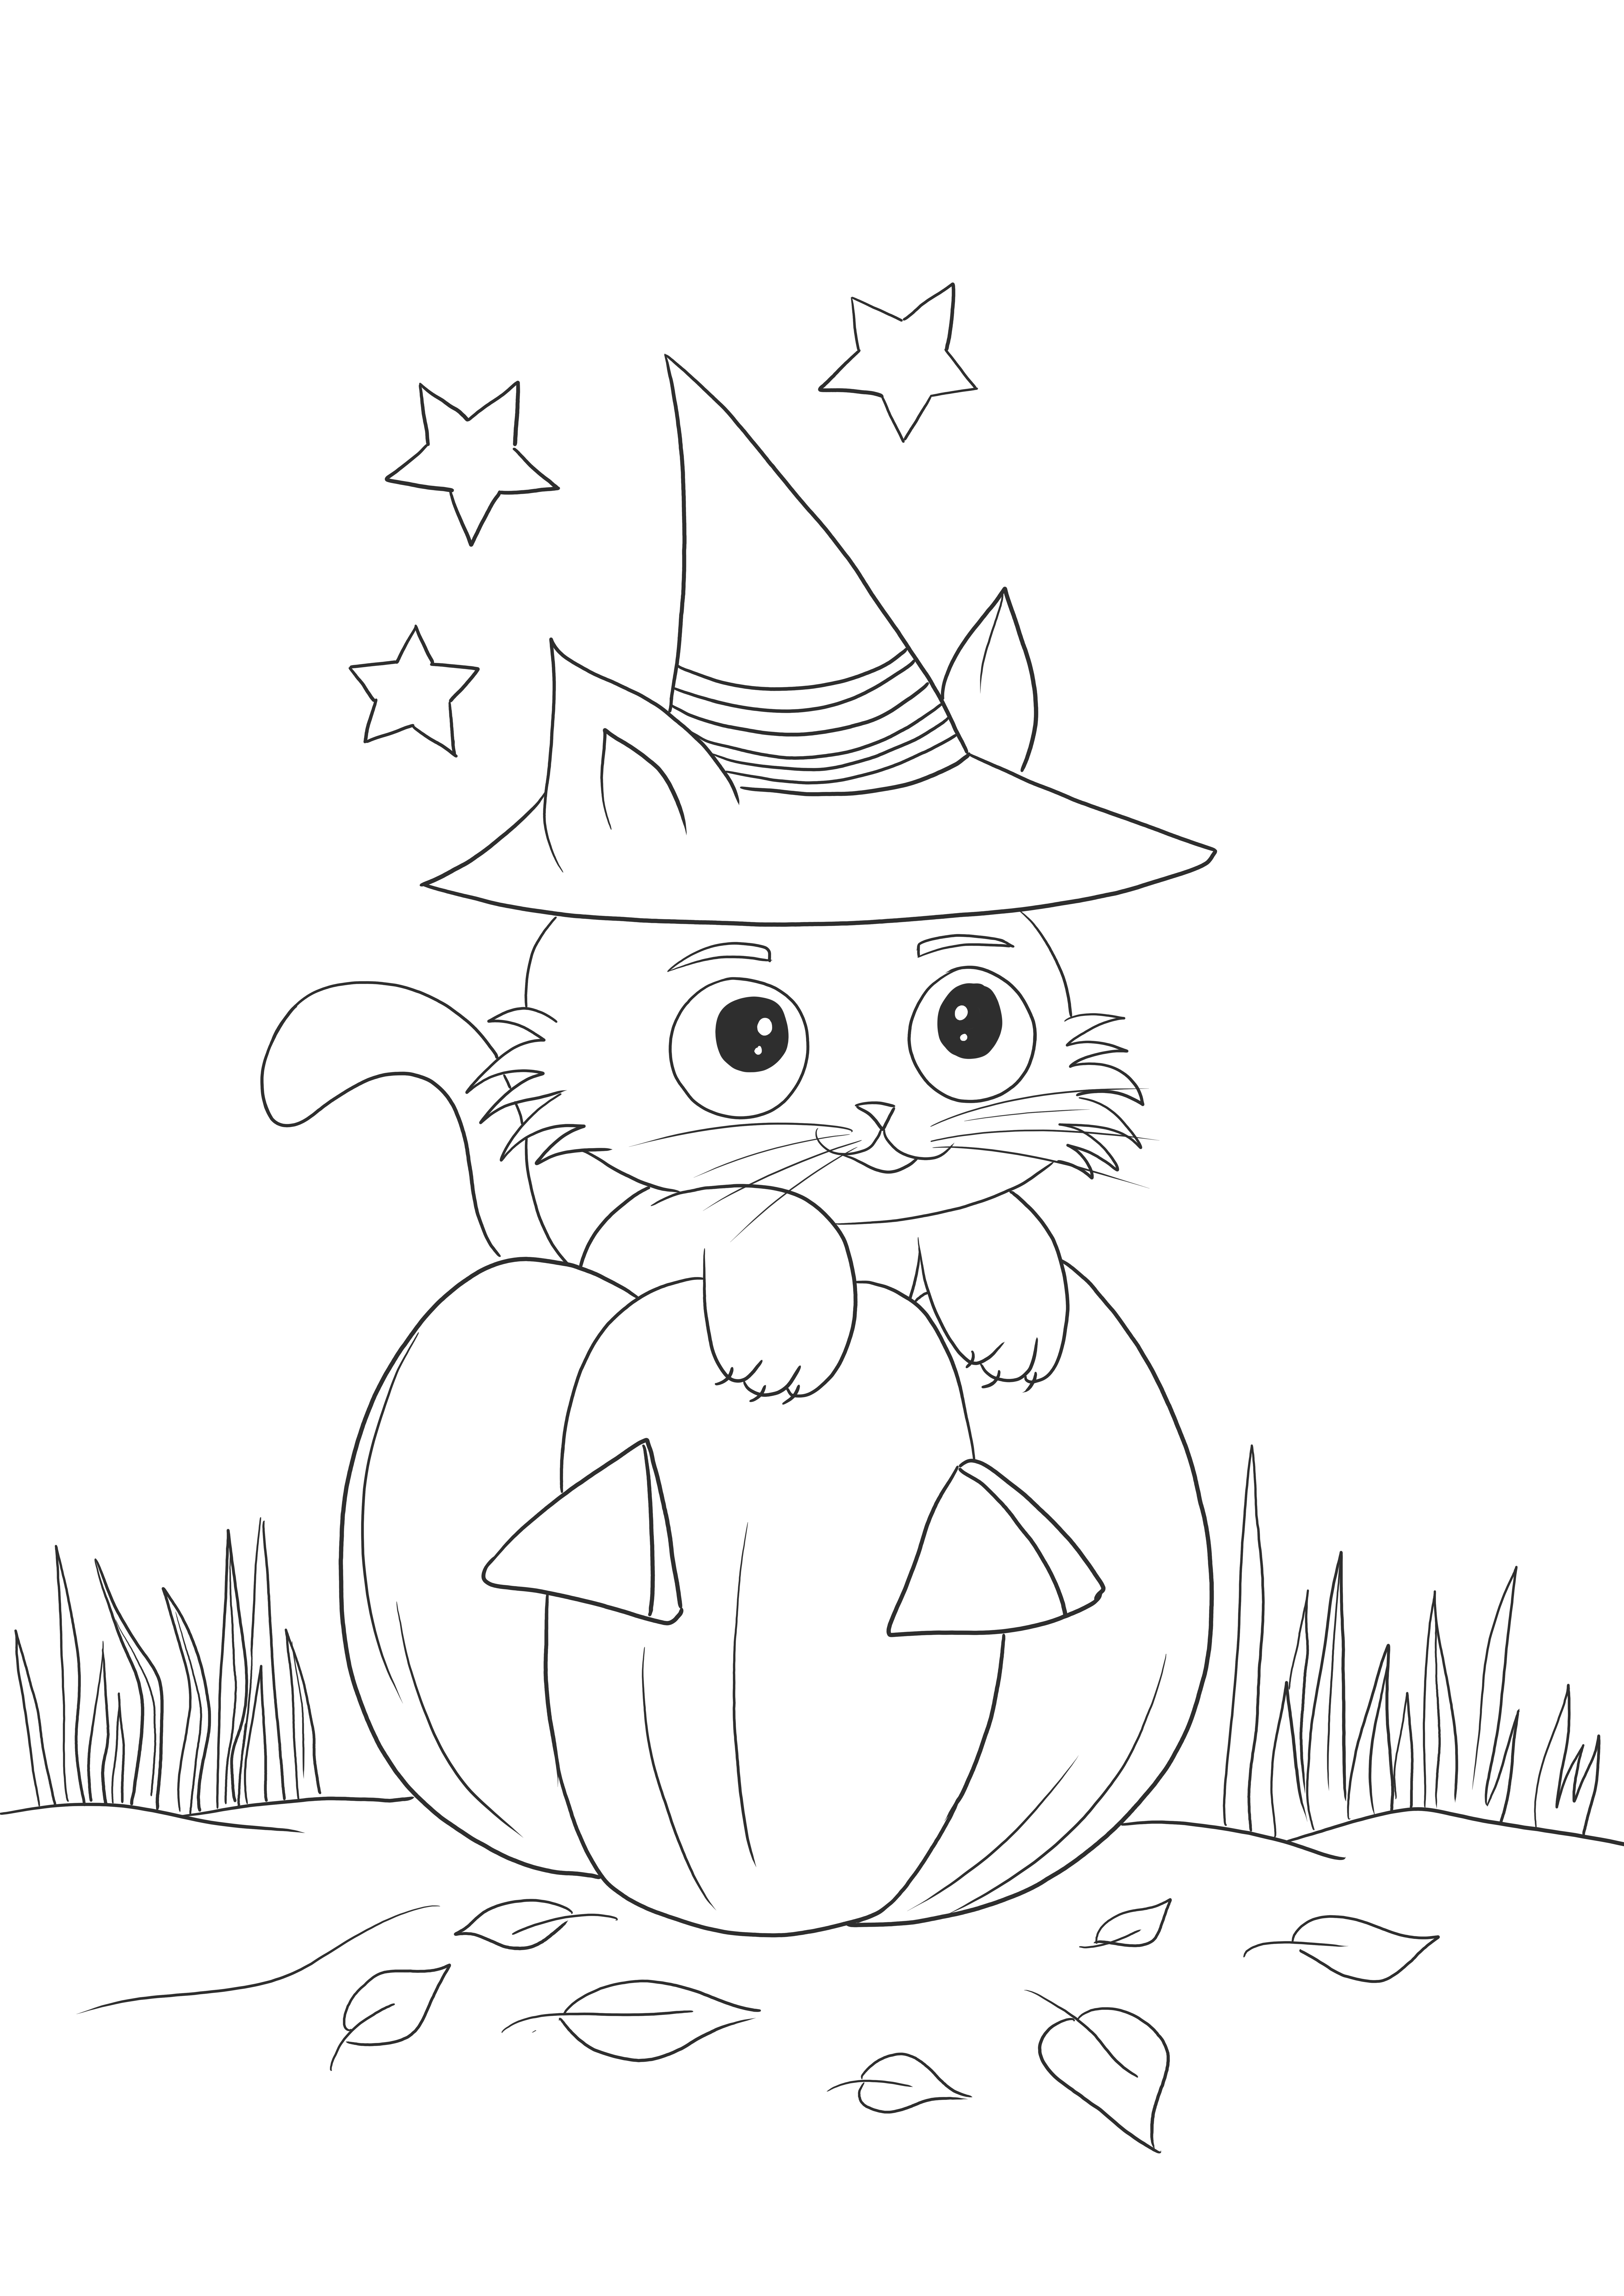 Image imprimable gratuite de chat citrouille super mignon pour la célébration d'Halloween